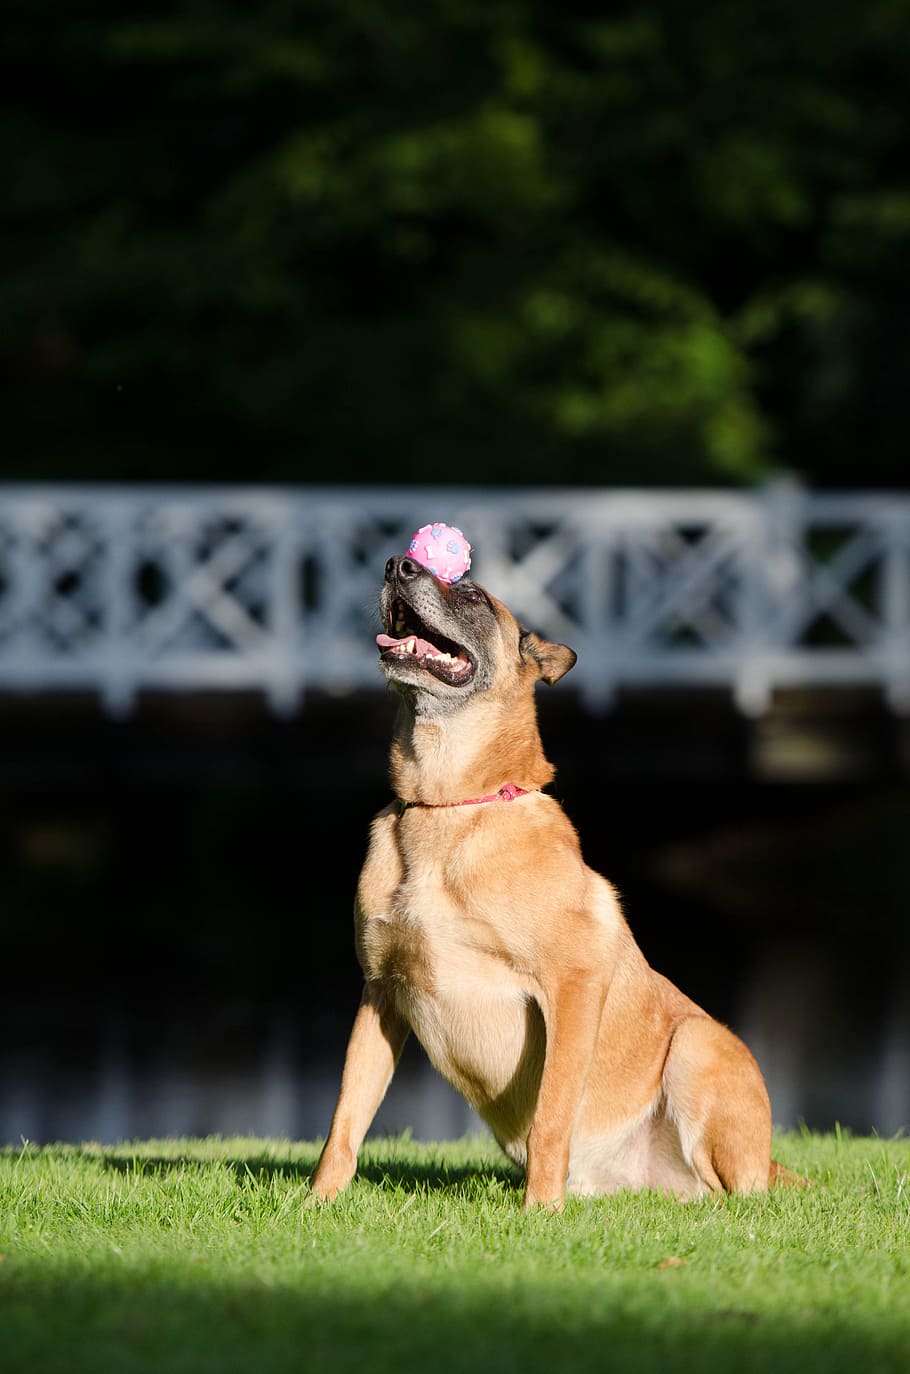 truque de cachorro, equilíbrio, bola no focinho, malinois, truque de exposição de cães, pastor belga cão, truque, mostra de cães um truque, verão, engraçado